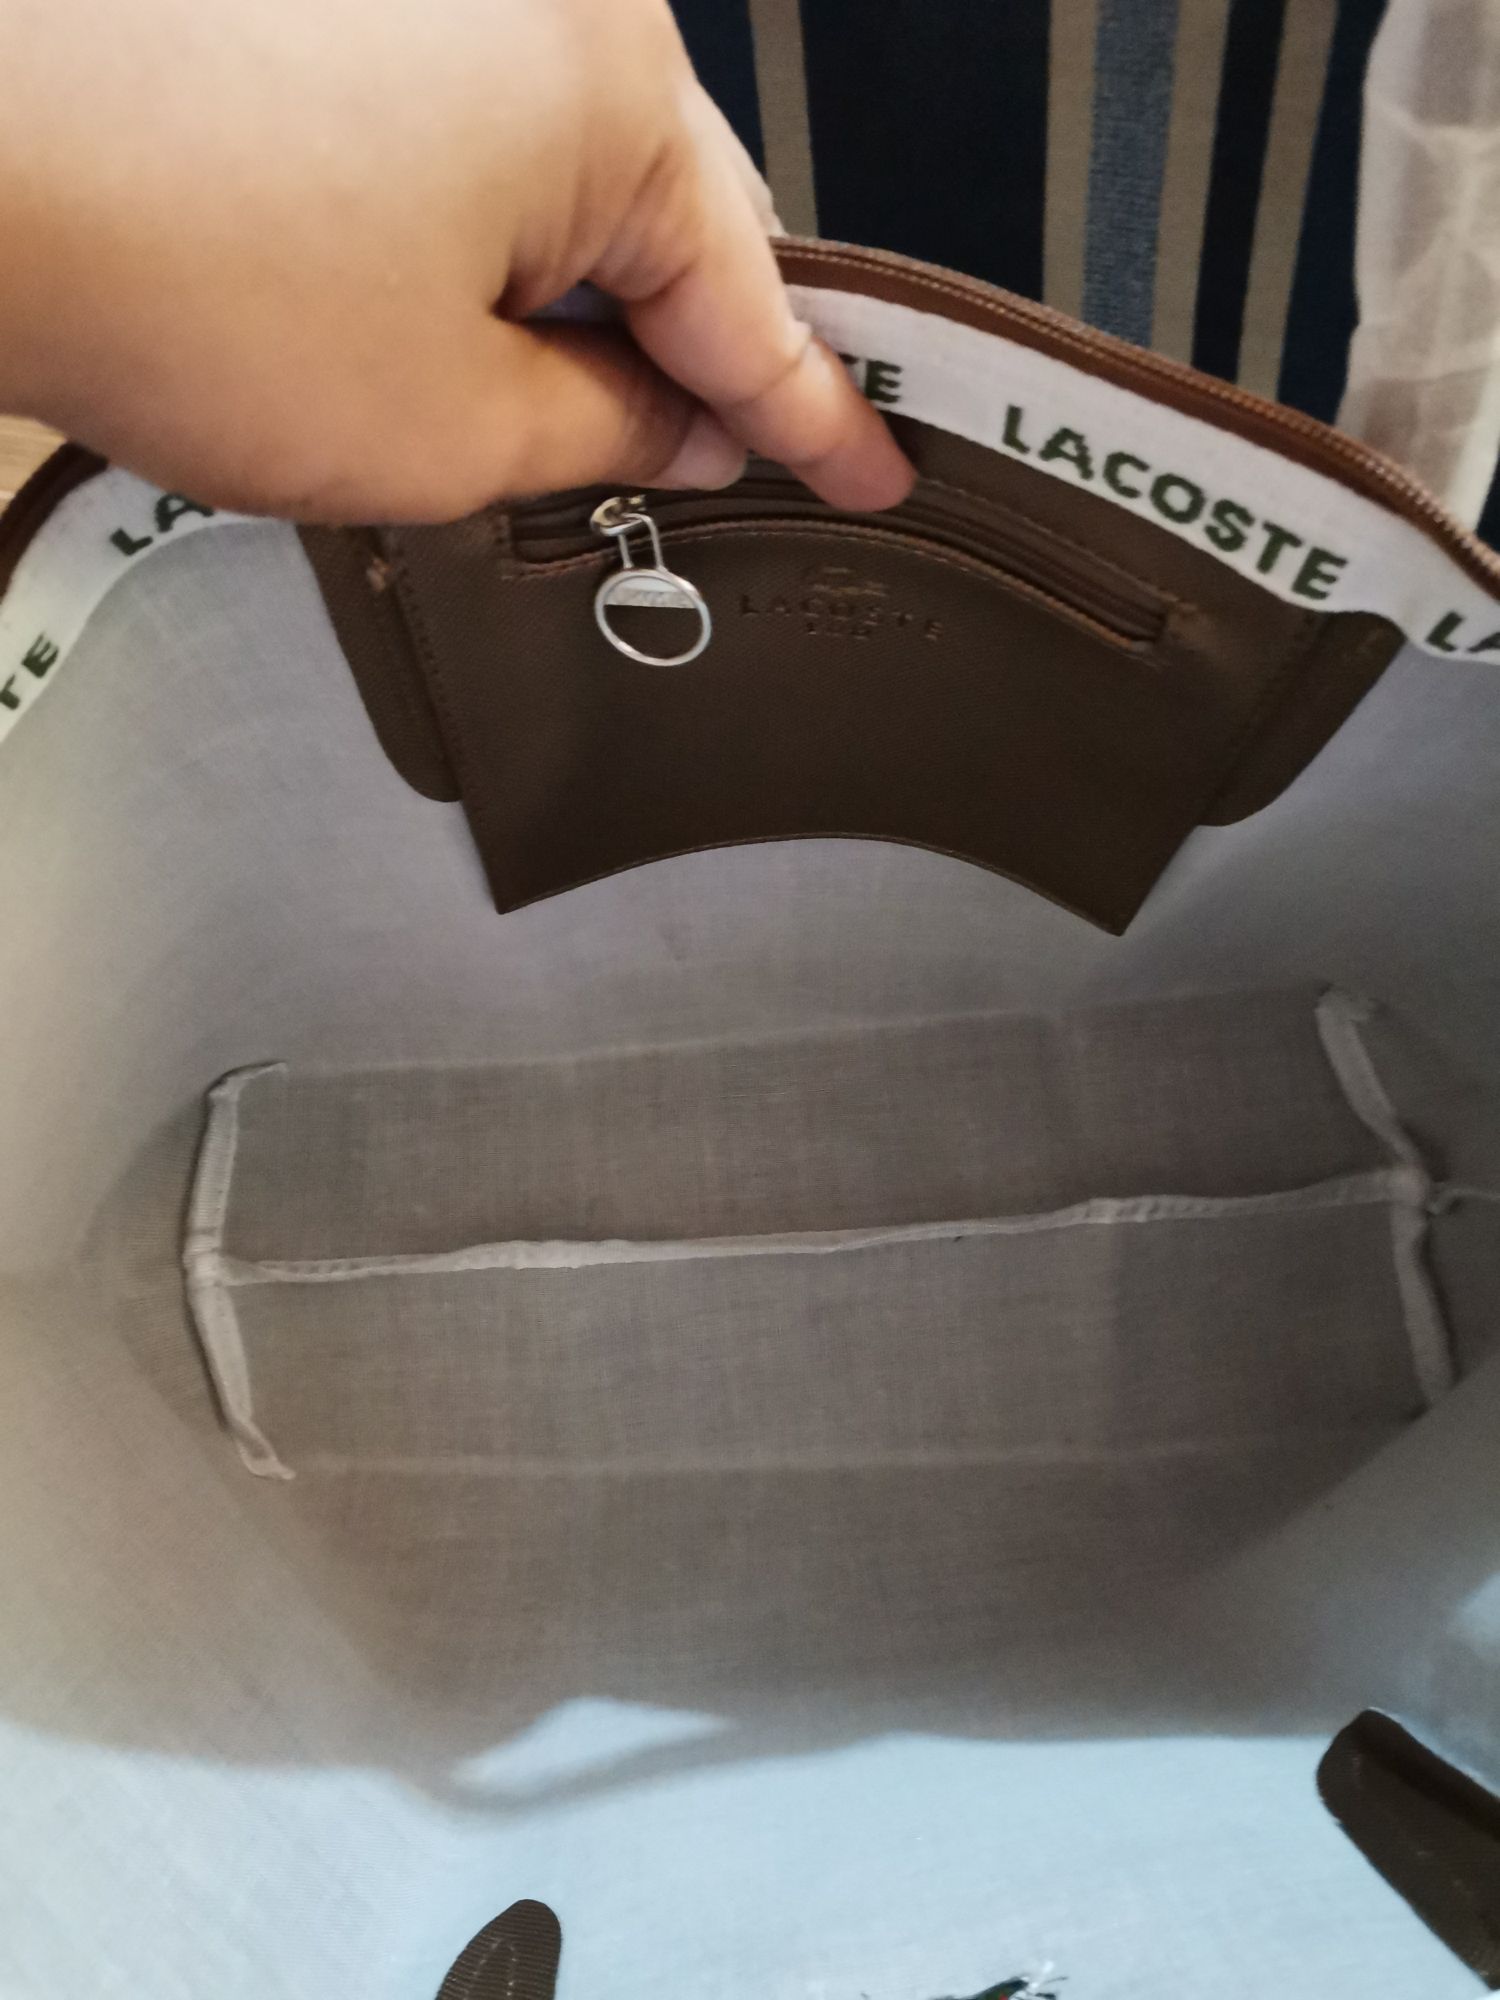 inside of original lacoste bag